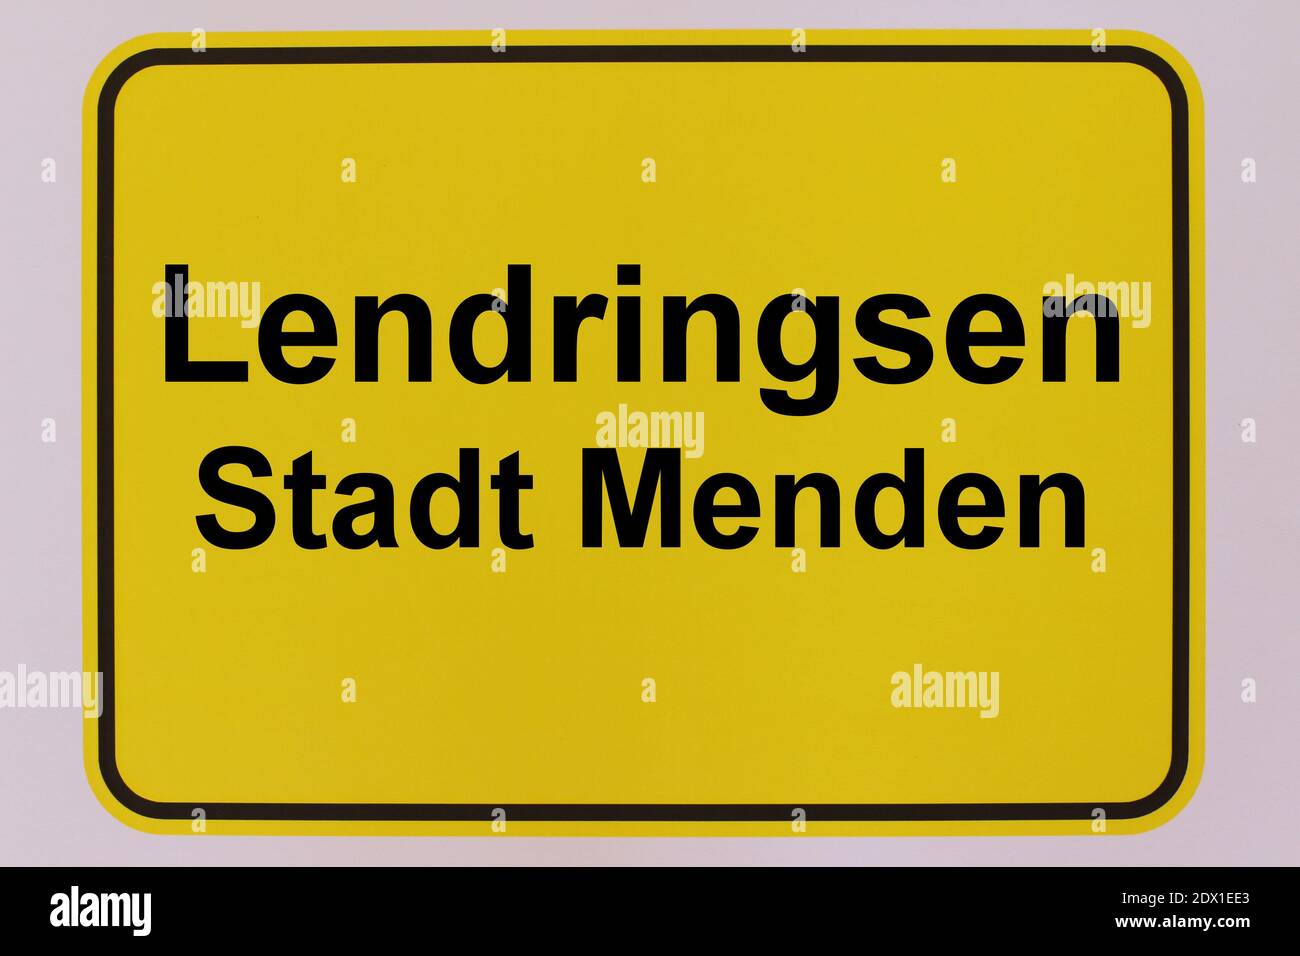 Illustration eines Stadteingangsschildes von Lendringsen, einem Stadtteil von Menden im Sauerland Stock Photo